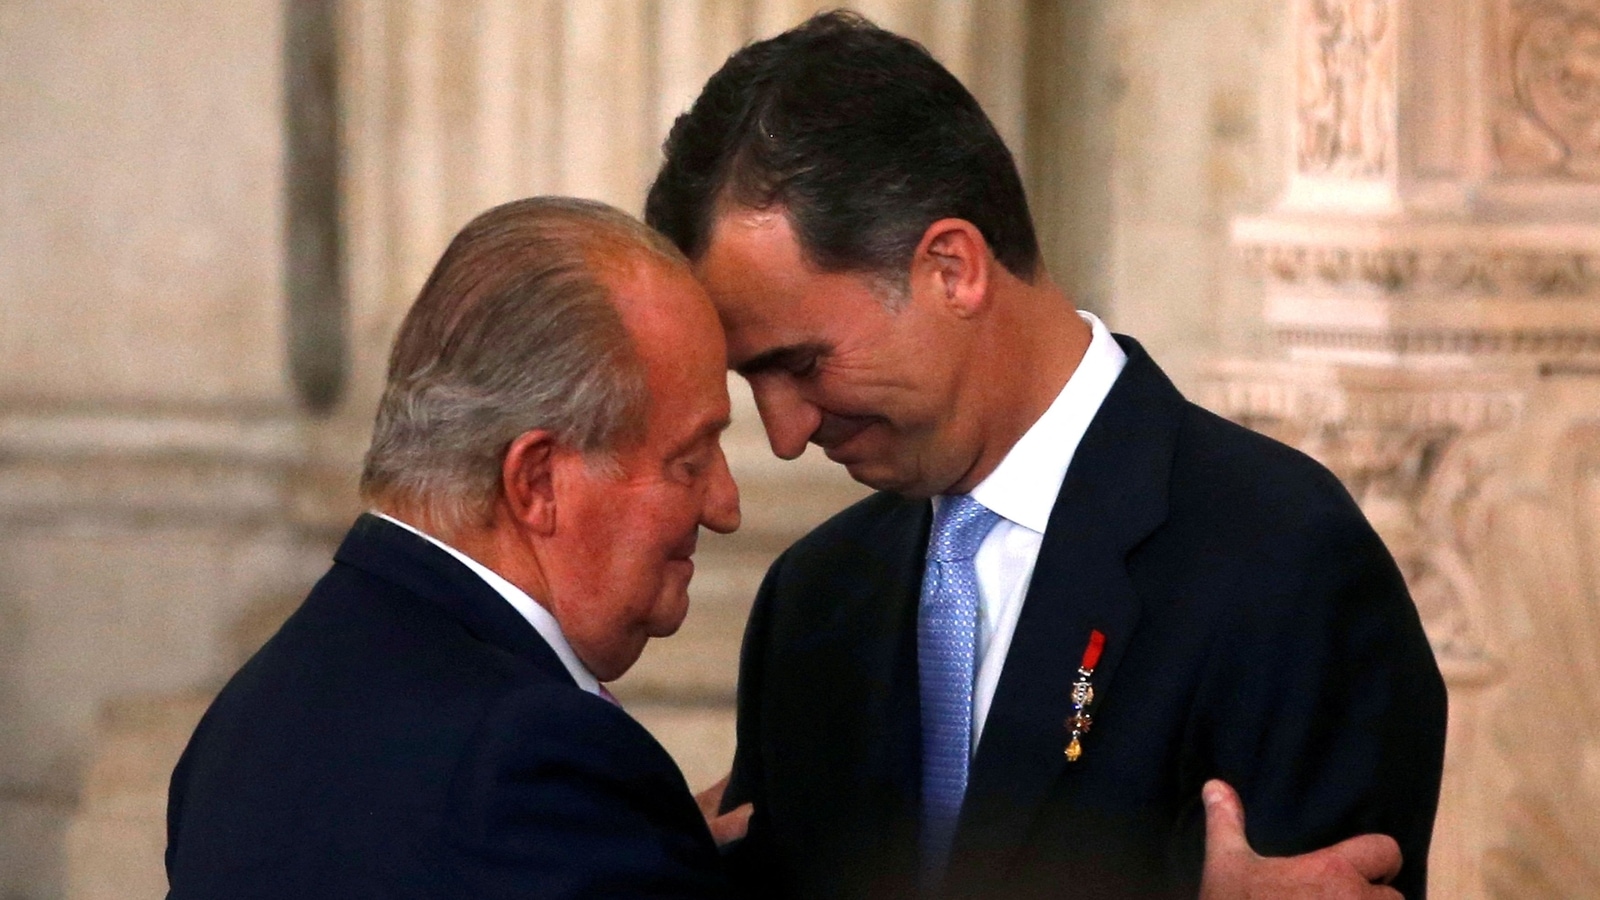 El ex rey de España regresa a España poco después del exilio |  Noticias del mundo